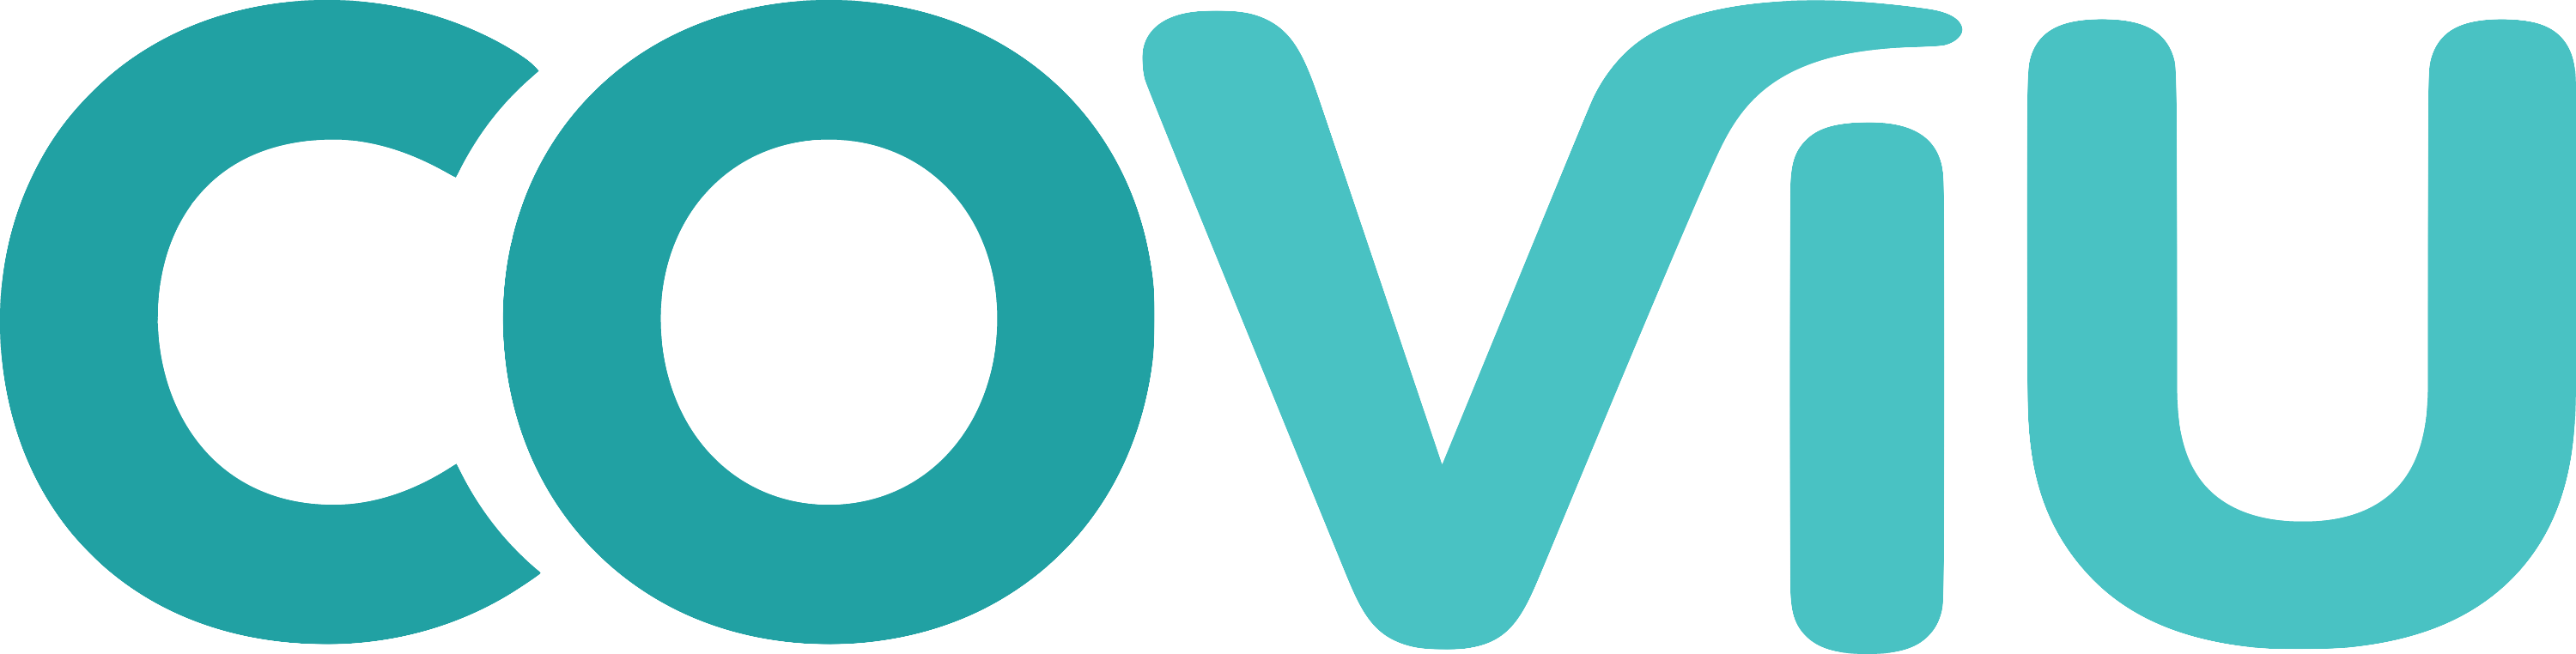 Coviu Logo